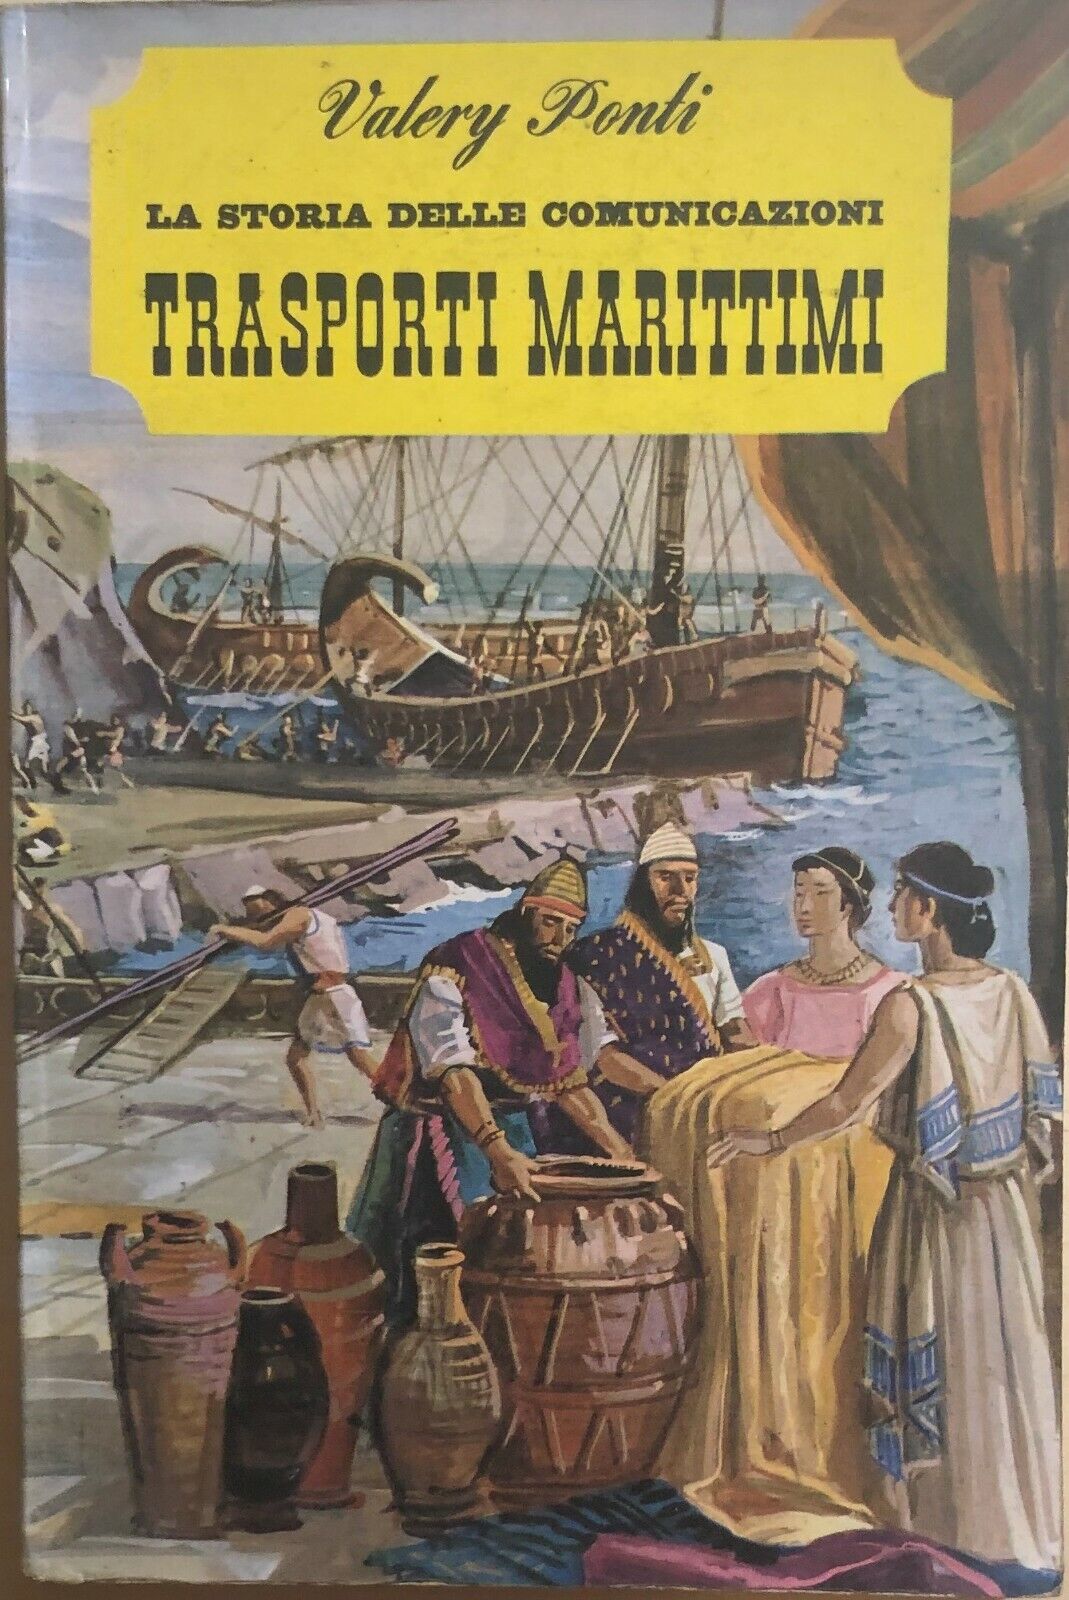 La storia delle comunicazioni - Trasporti marittimi di Valery Ponti, 1965, De